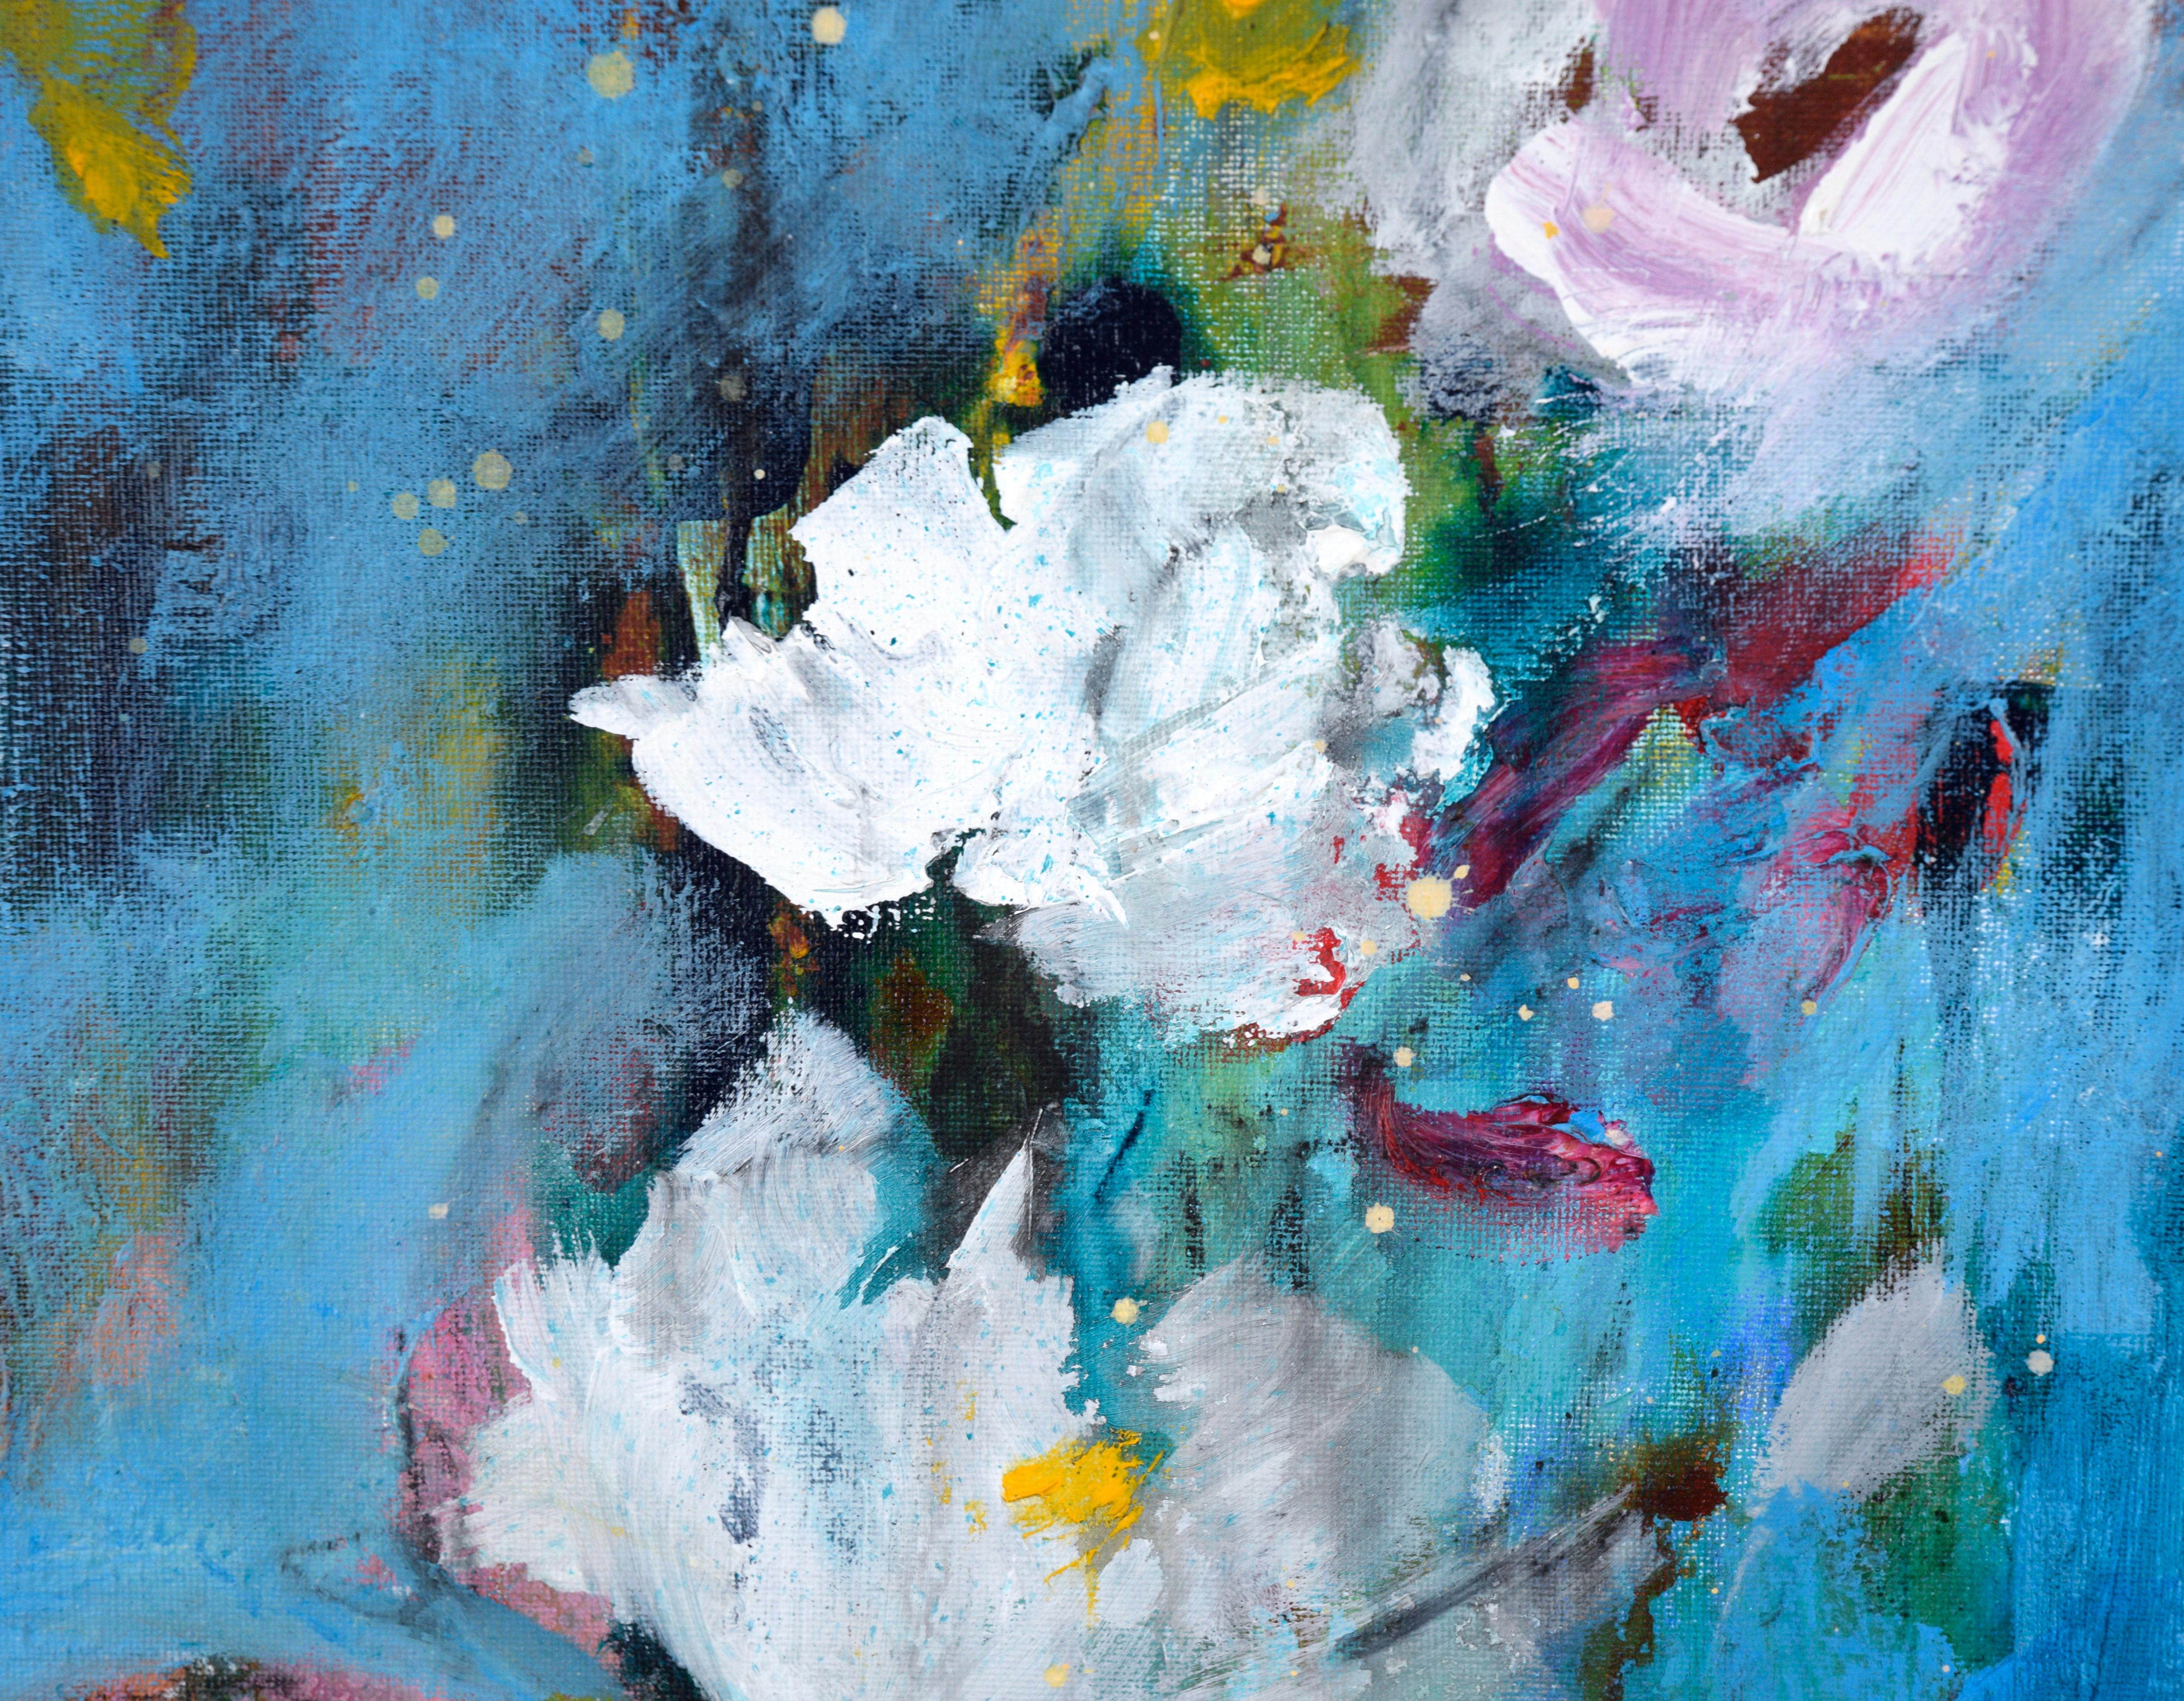 Abstraktes expressionistisches Stillleben mit weißen Blumen

Lebendiges Stillleben von Ilana Ingber (Amerikanerin, geb. 1984). Dieses Stück hat weiße und zartrosa Blumen, die sich von einem kräftigen blauen Hintergrund abheben. Es gibt auch andere